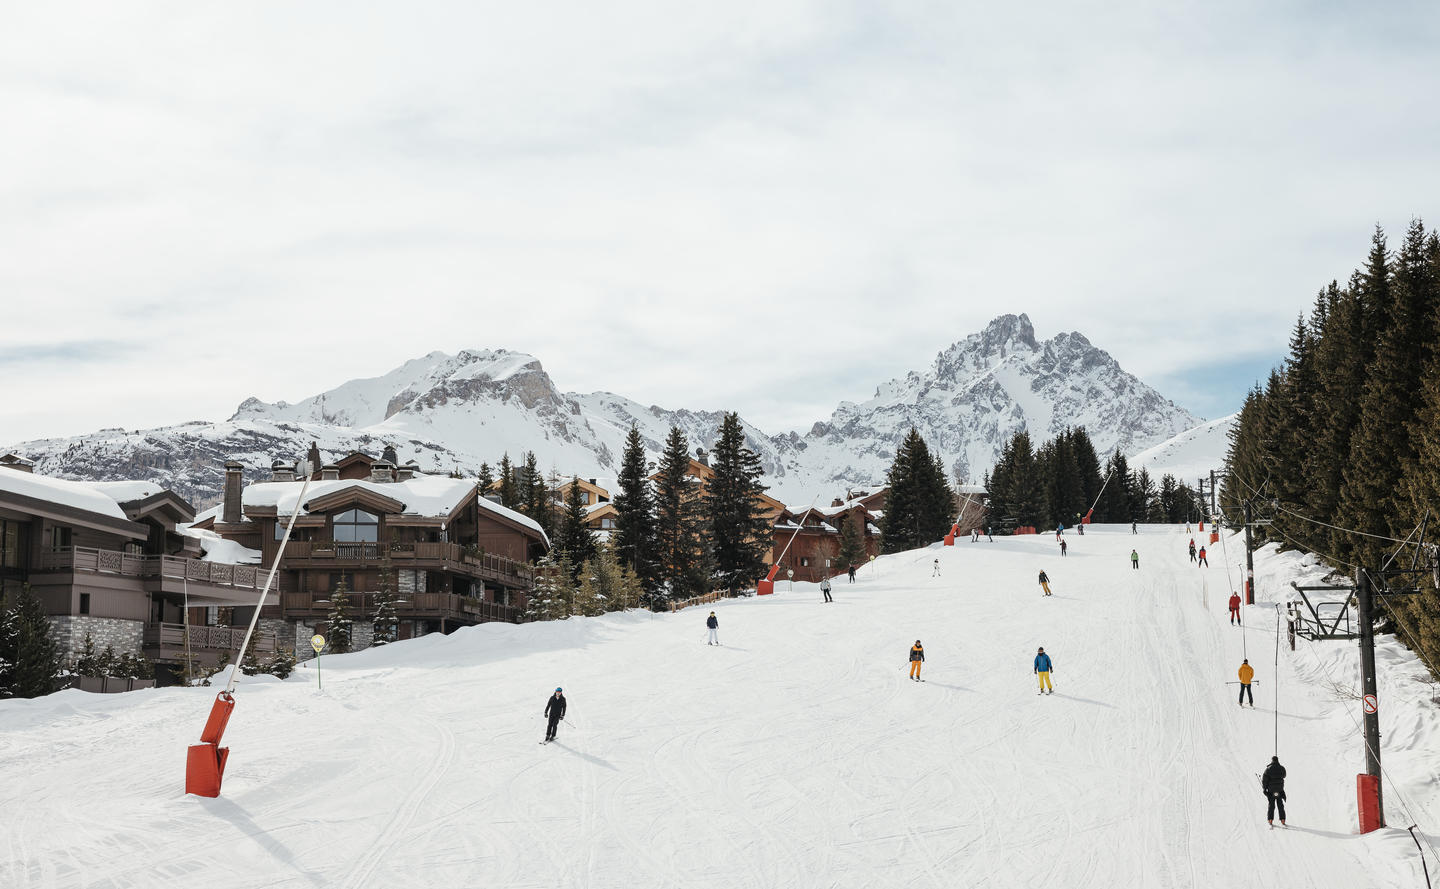 Aman Le Melezin - Ski run